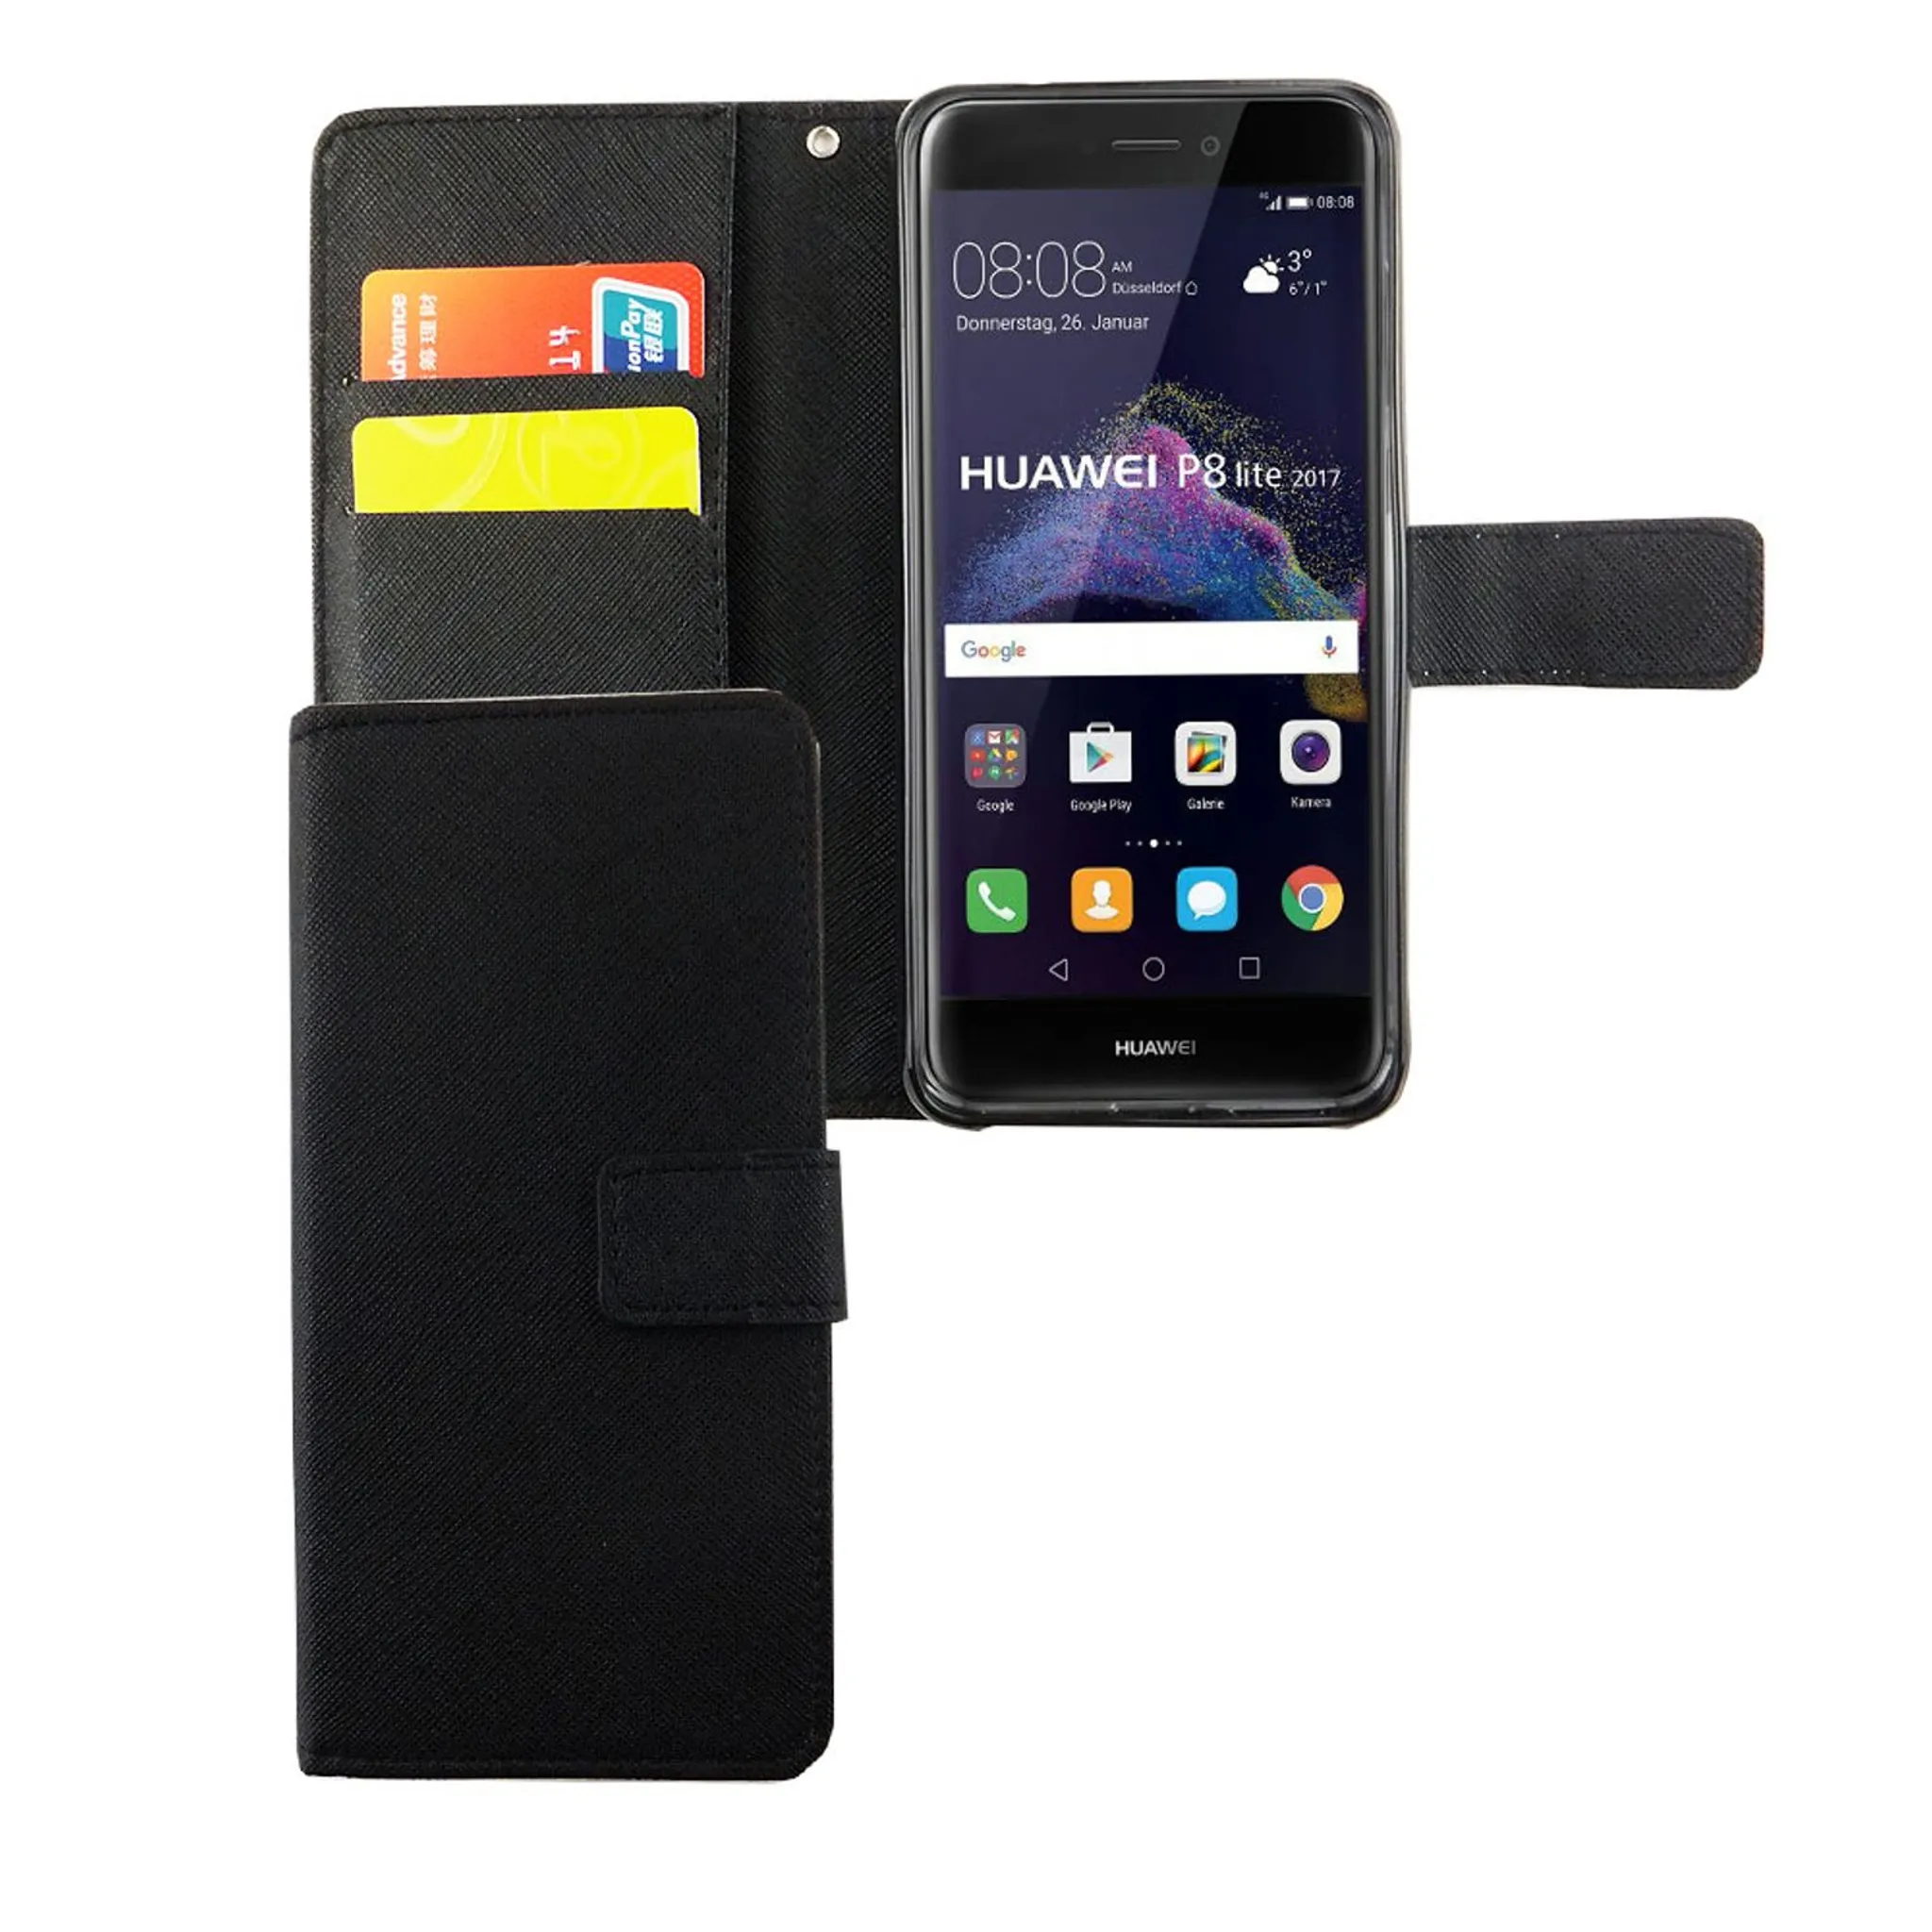 Kratzfestes Tasche Magnetisch Verschluss Handyhülle für Huawei P8 Lite 2015/2016 Gold CAXPRO® Leder Schutzhülle mit Klappfunktion Huawei P8 Lite 2015/2016 Hülle 